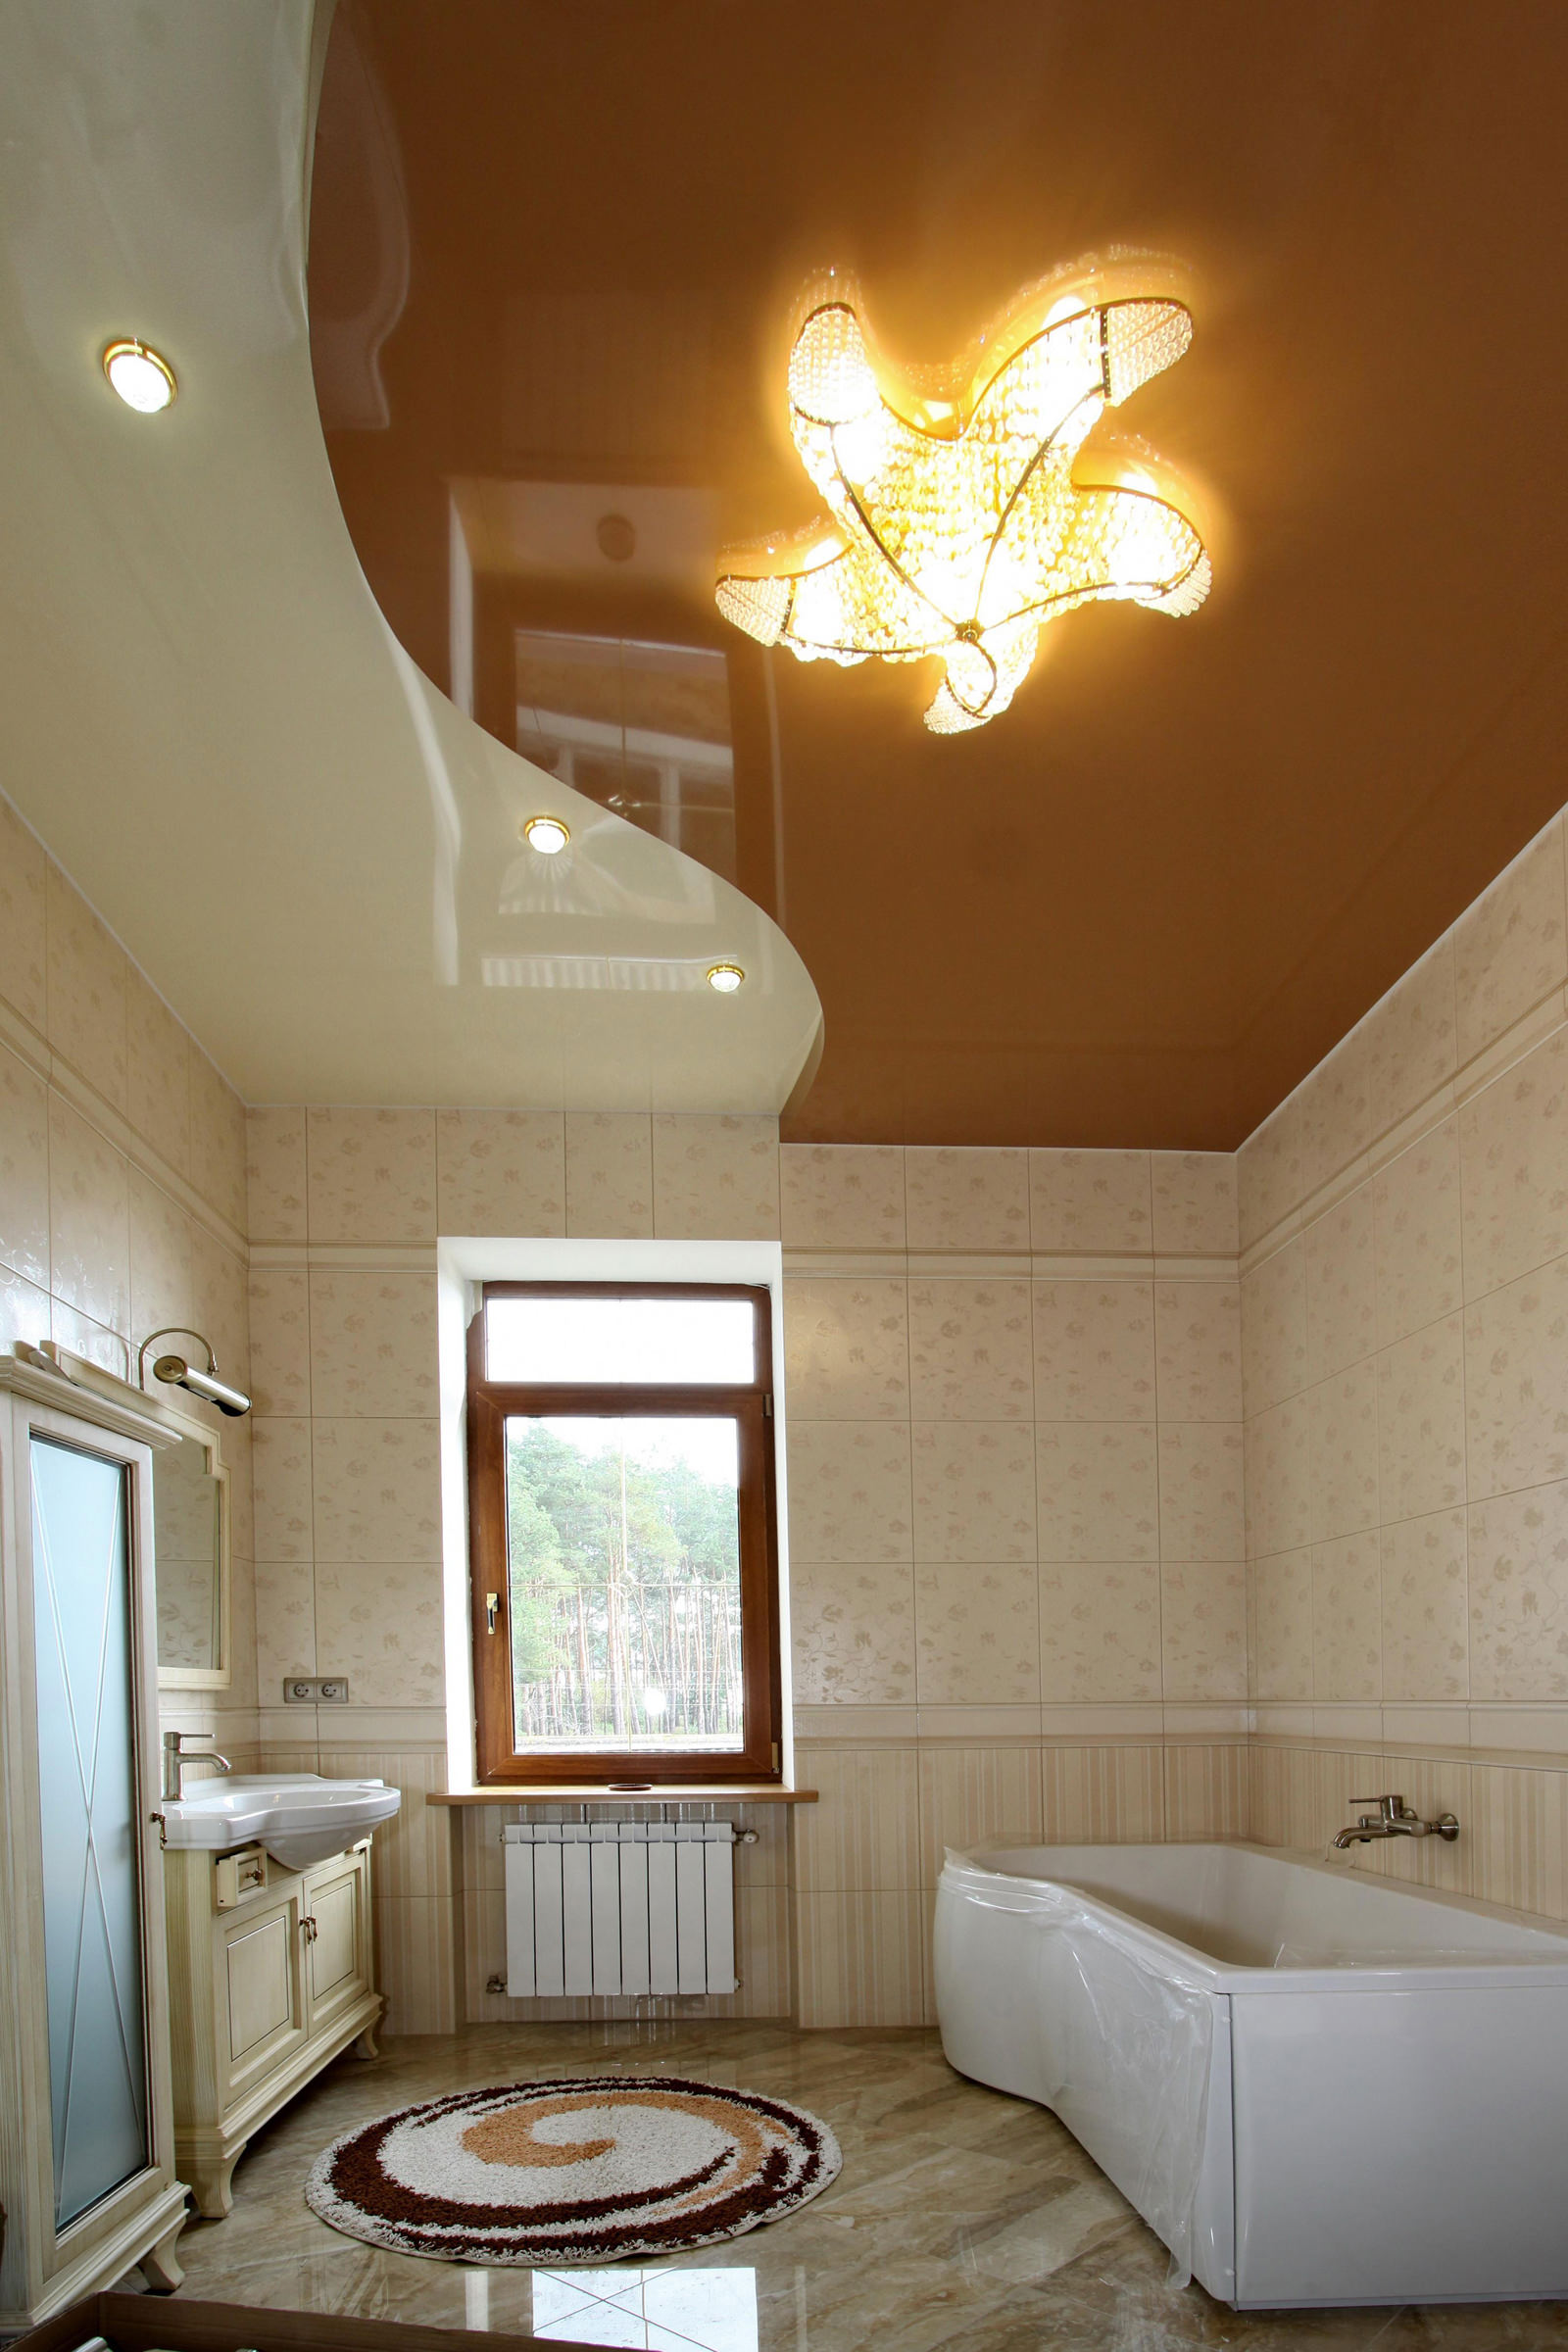 освещение потолка в ванной